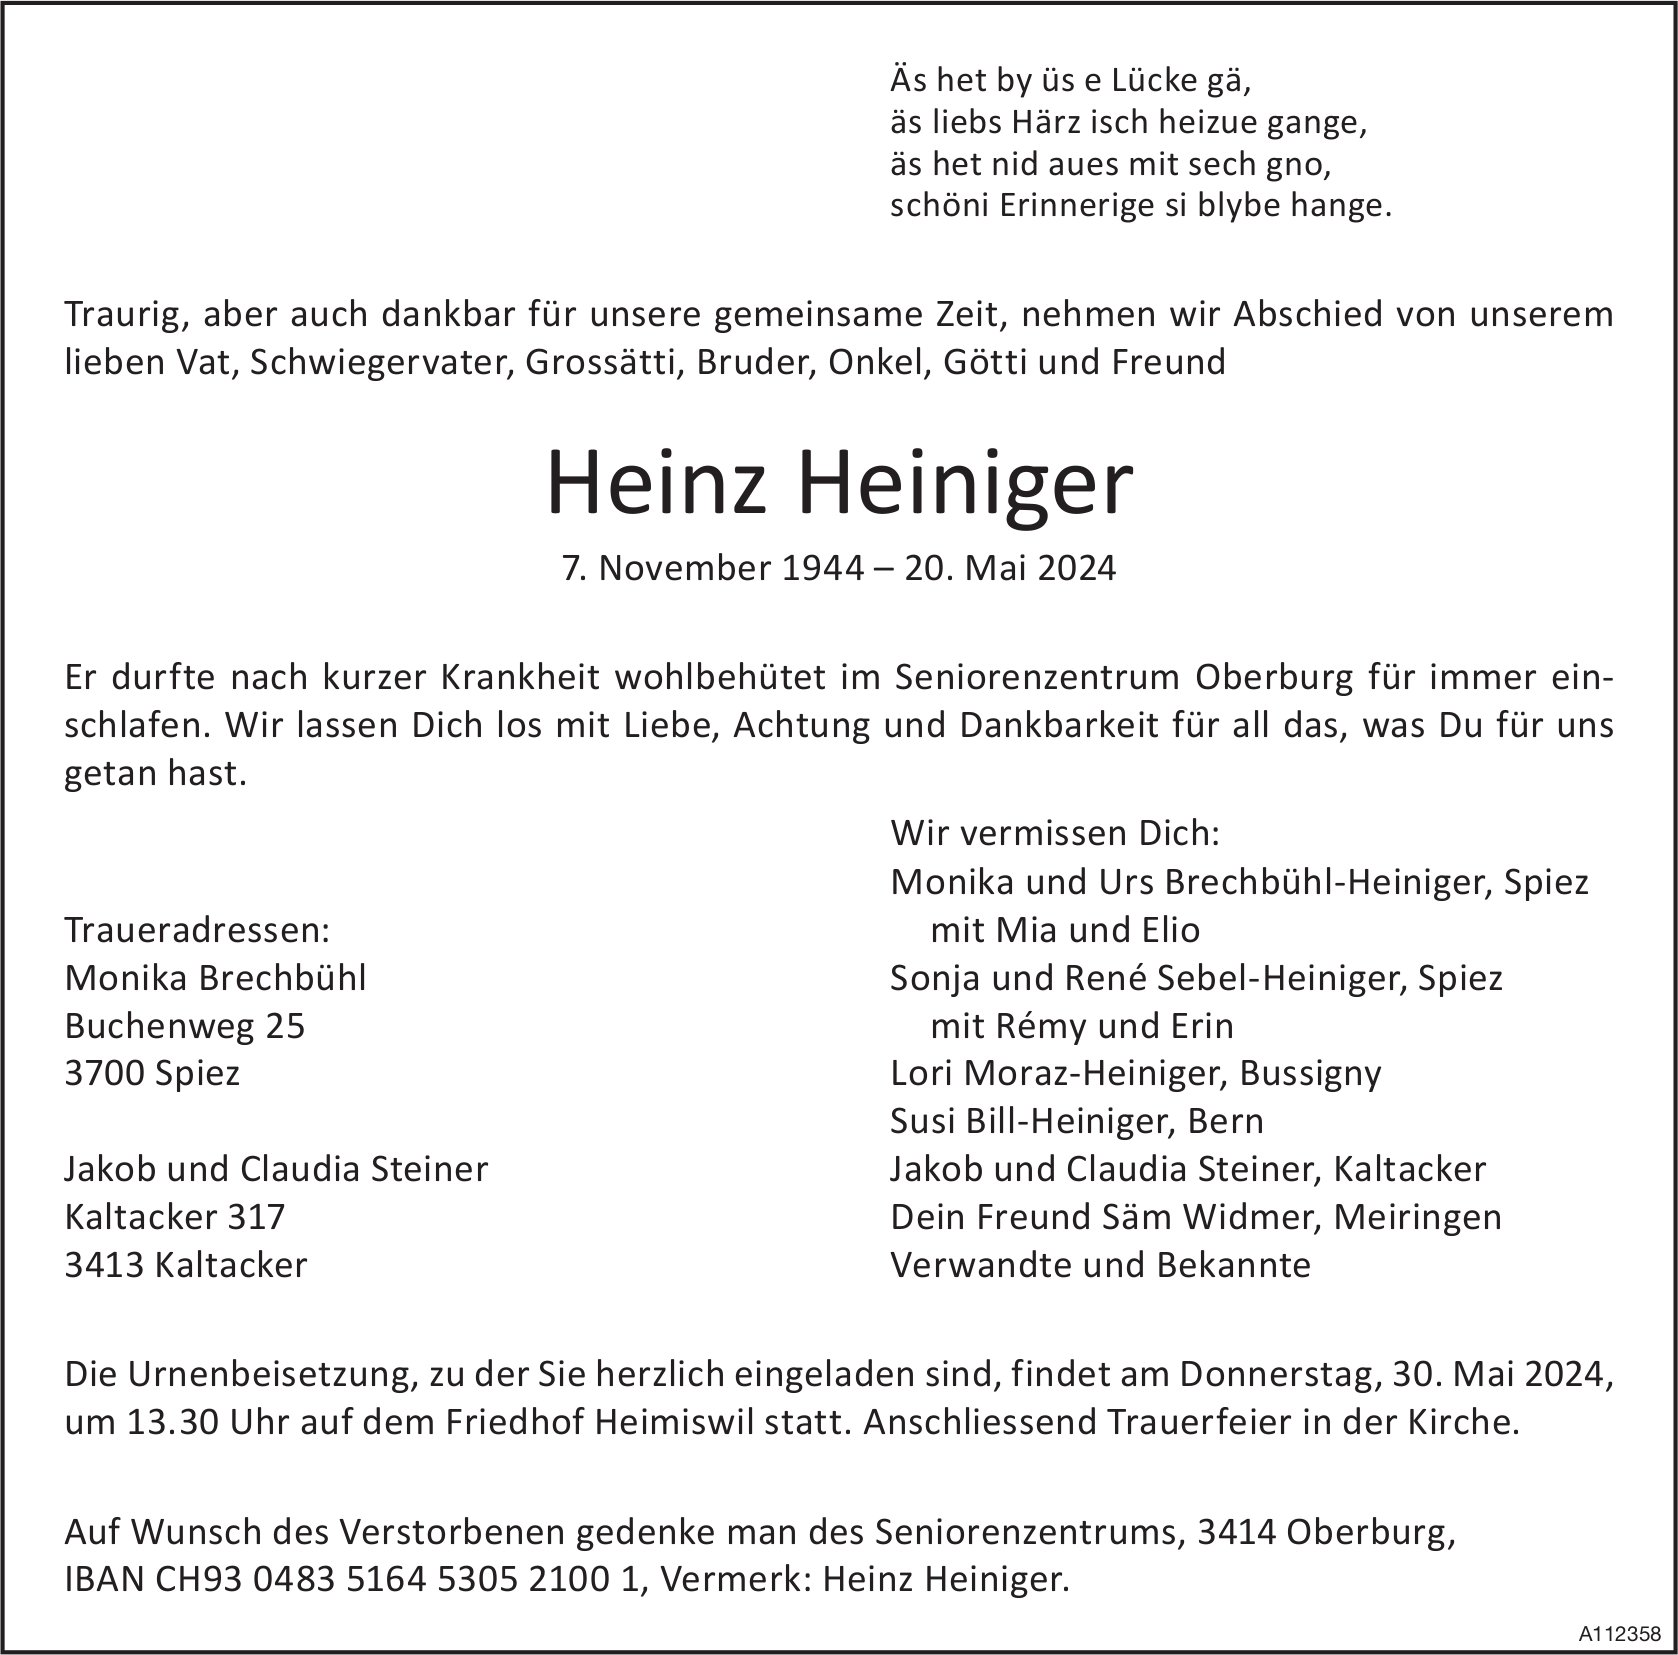 Heinz Heiniger, Mai 2024 / TA